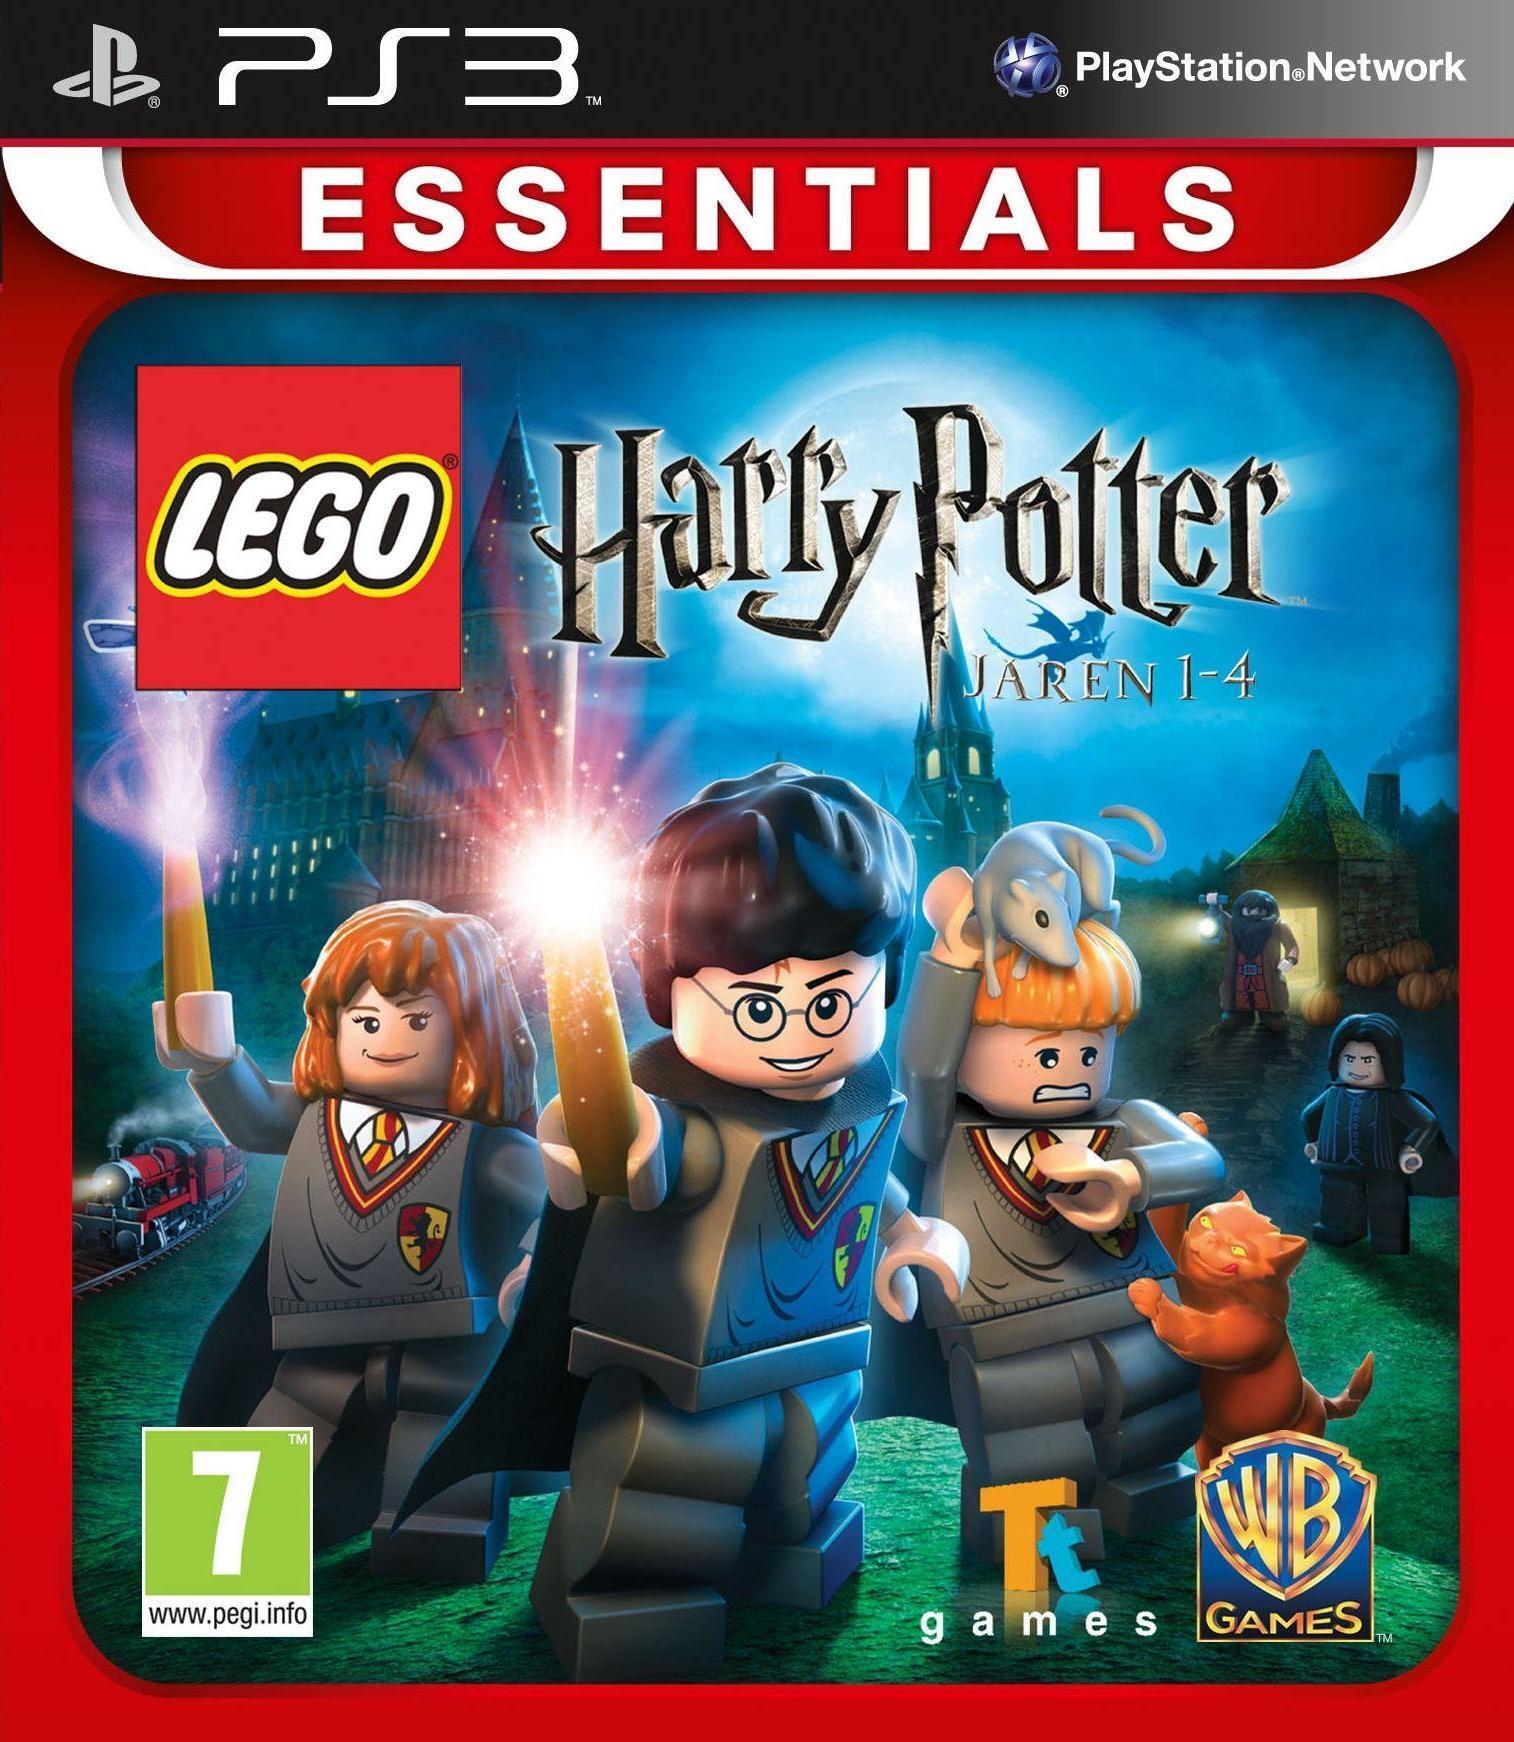 Warner Bros. Interactive Lego Harry Potter Jaren 1-4 (essentials) PlayStation 3